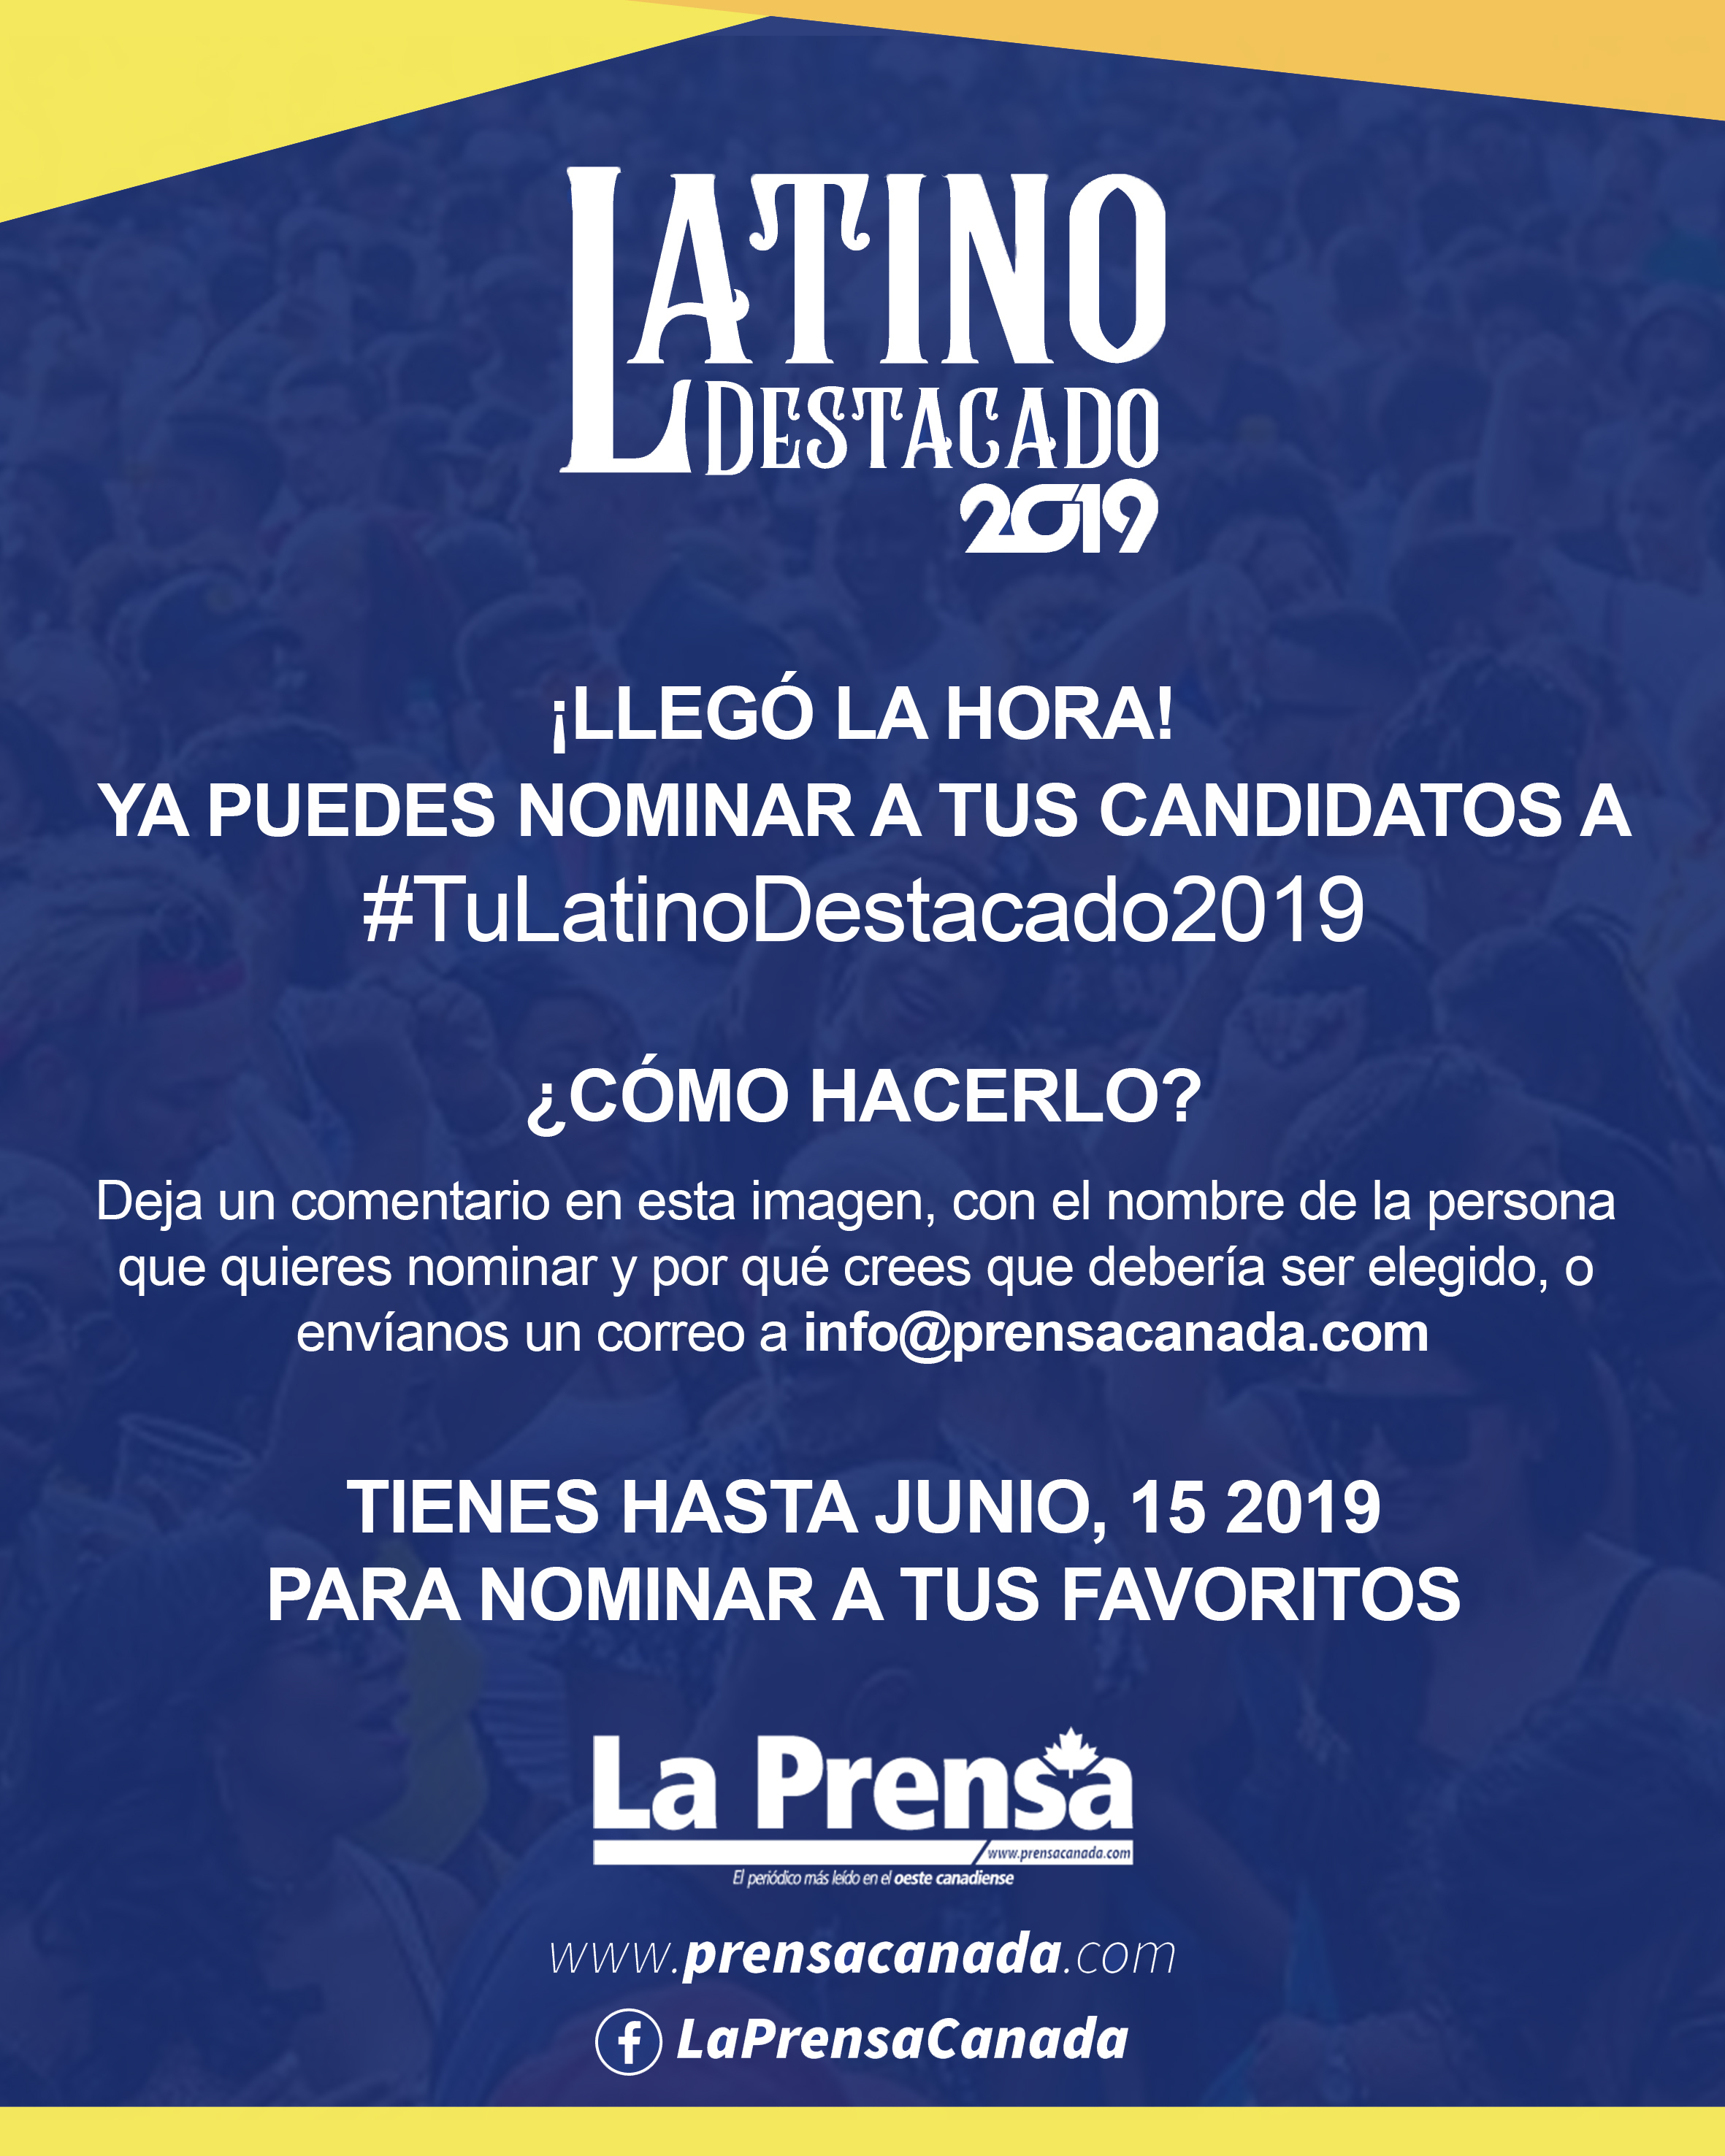 Ya están abiertas las nominaciones para Tu Latino Destacado